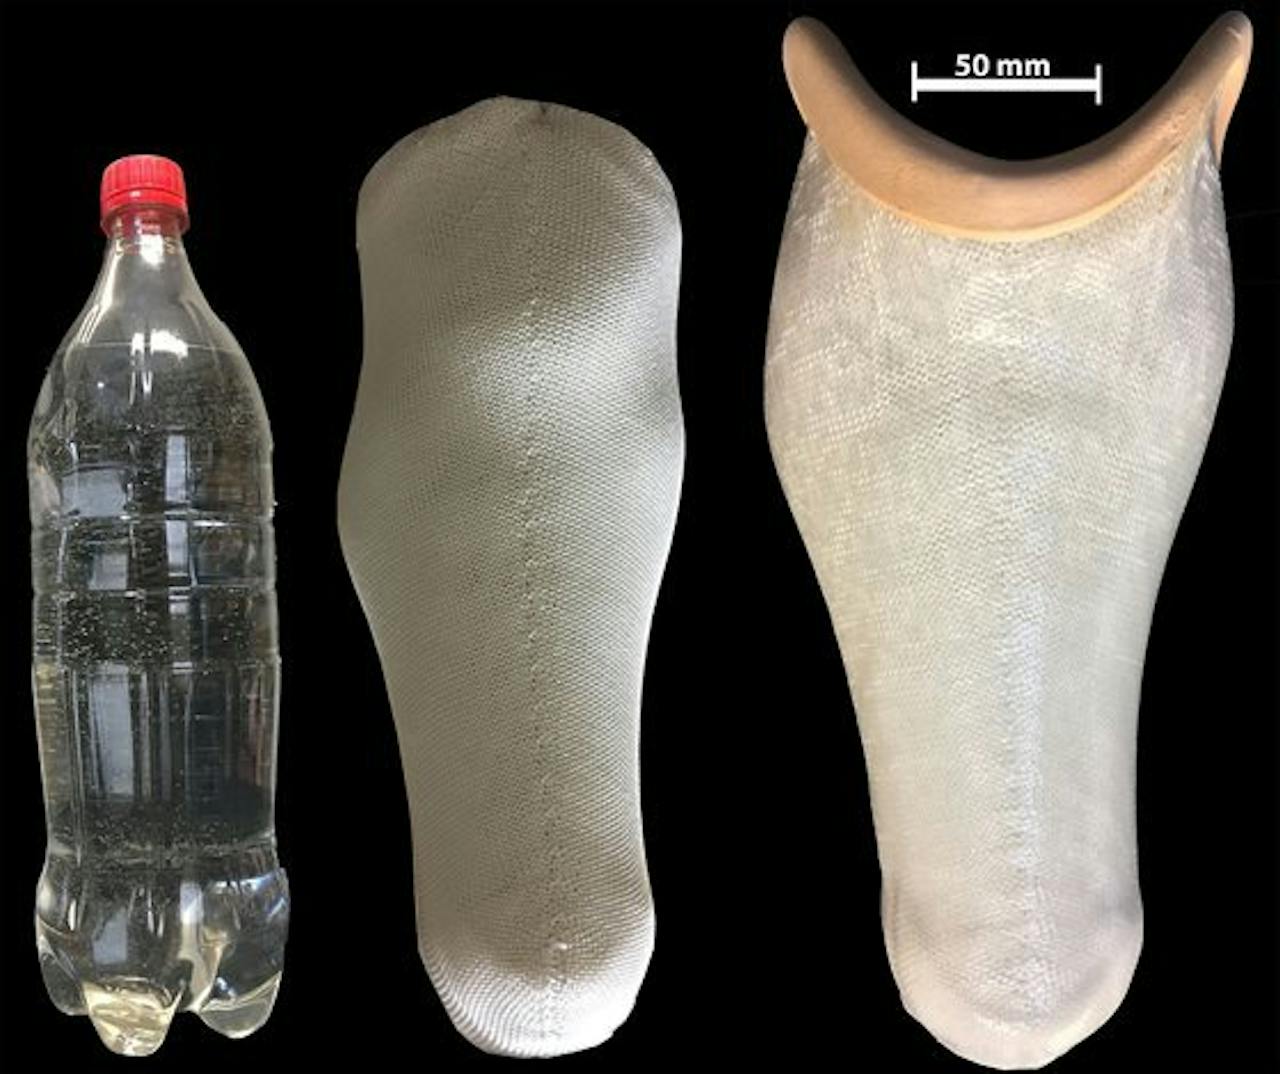 Een foto van een plastic fles en twee protheses op een zwarte achtergrond.